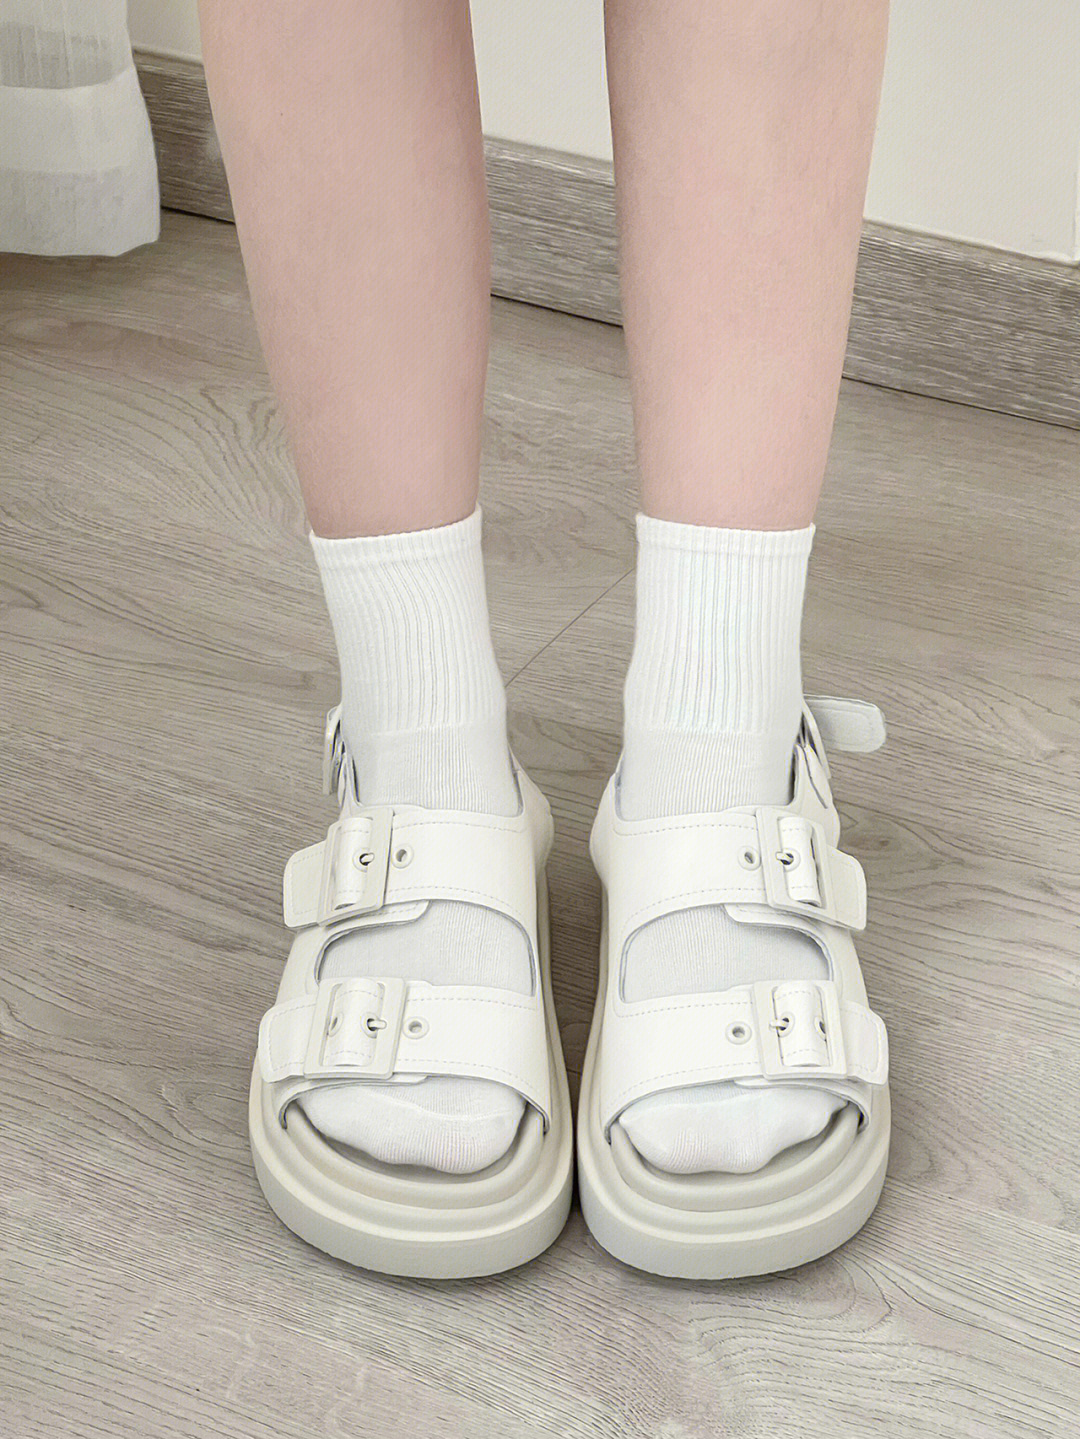 女孩白袜凉鞋图片